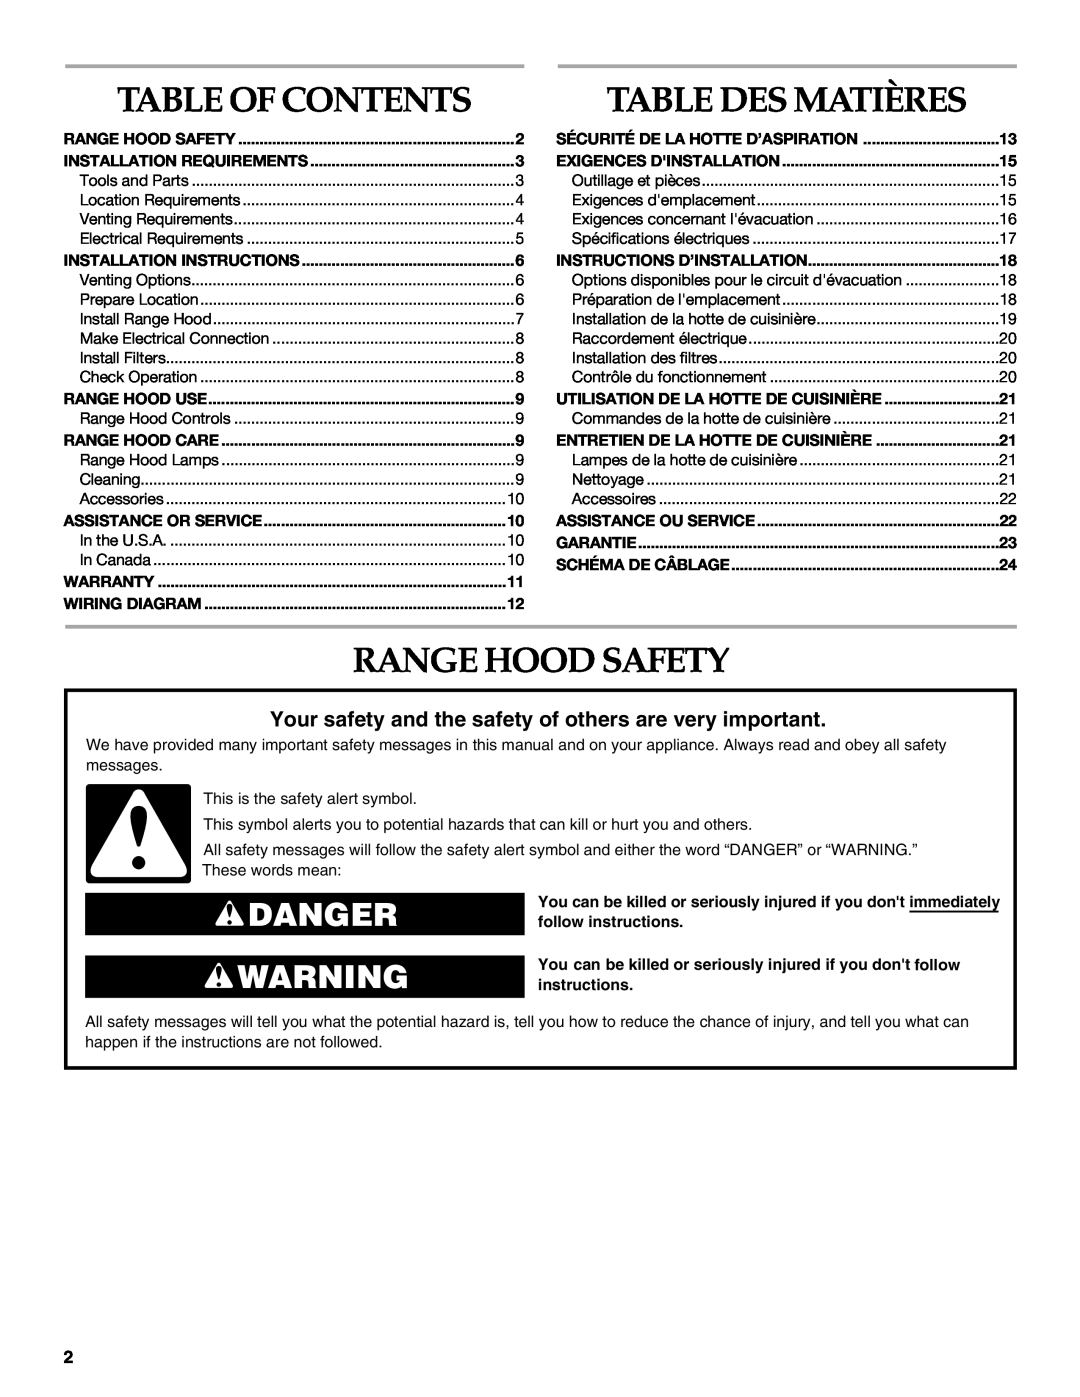 KitchenAid 2005 Table Of Contents Table Des Matières, Range Hood Safety, Danger, Sécurité De La Hotte D’Aspiration 